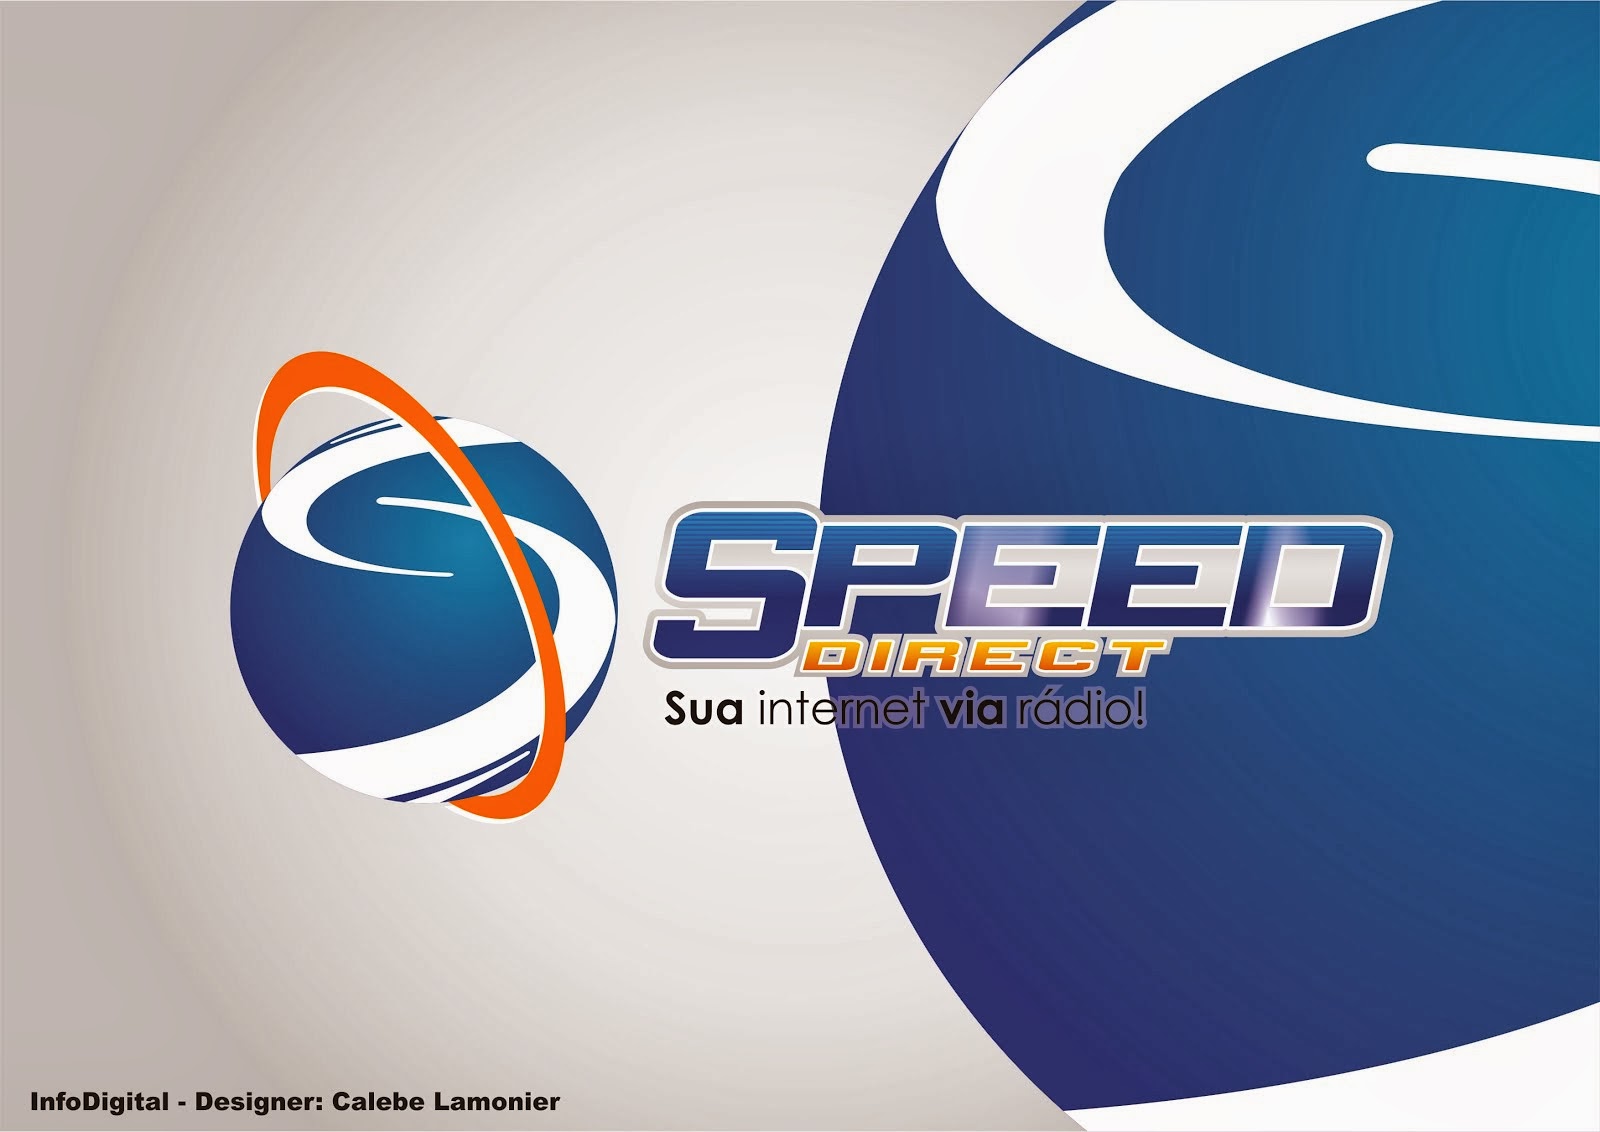 SpeeDirect